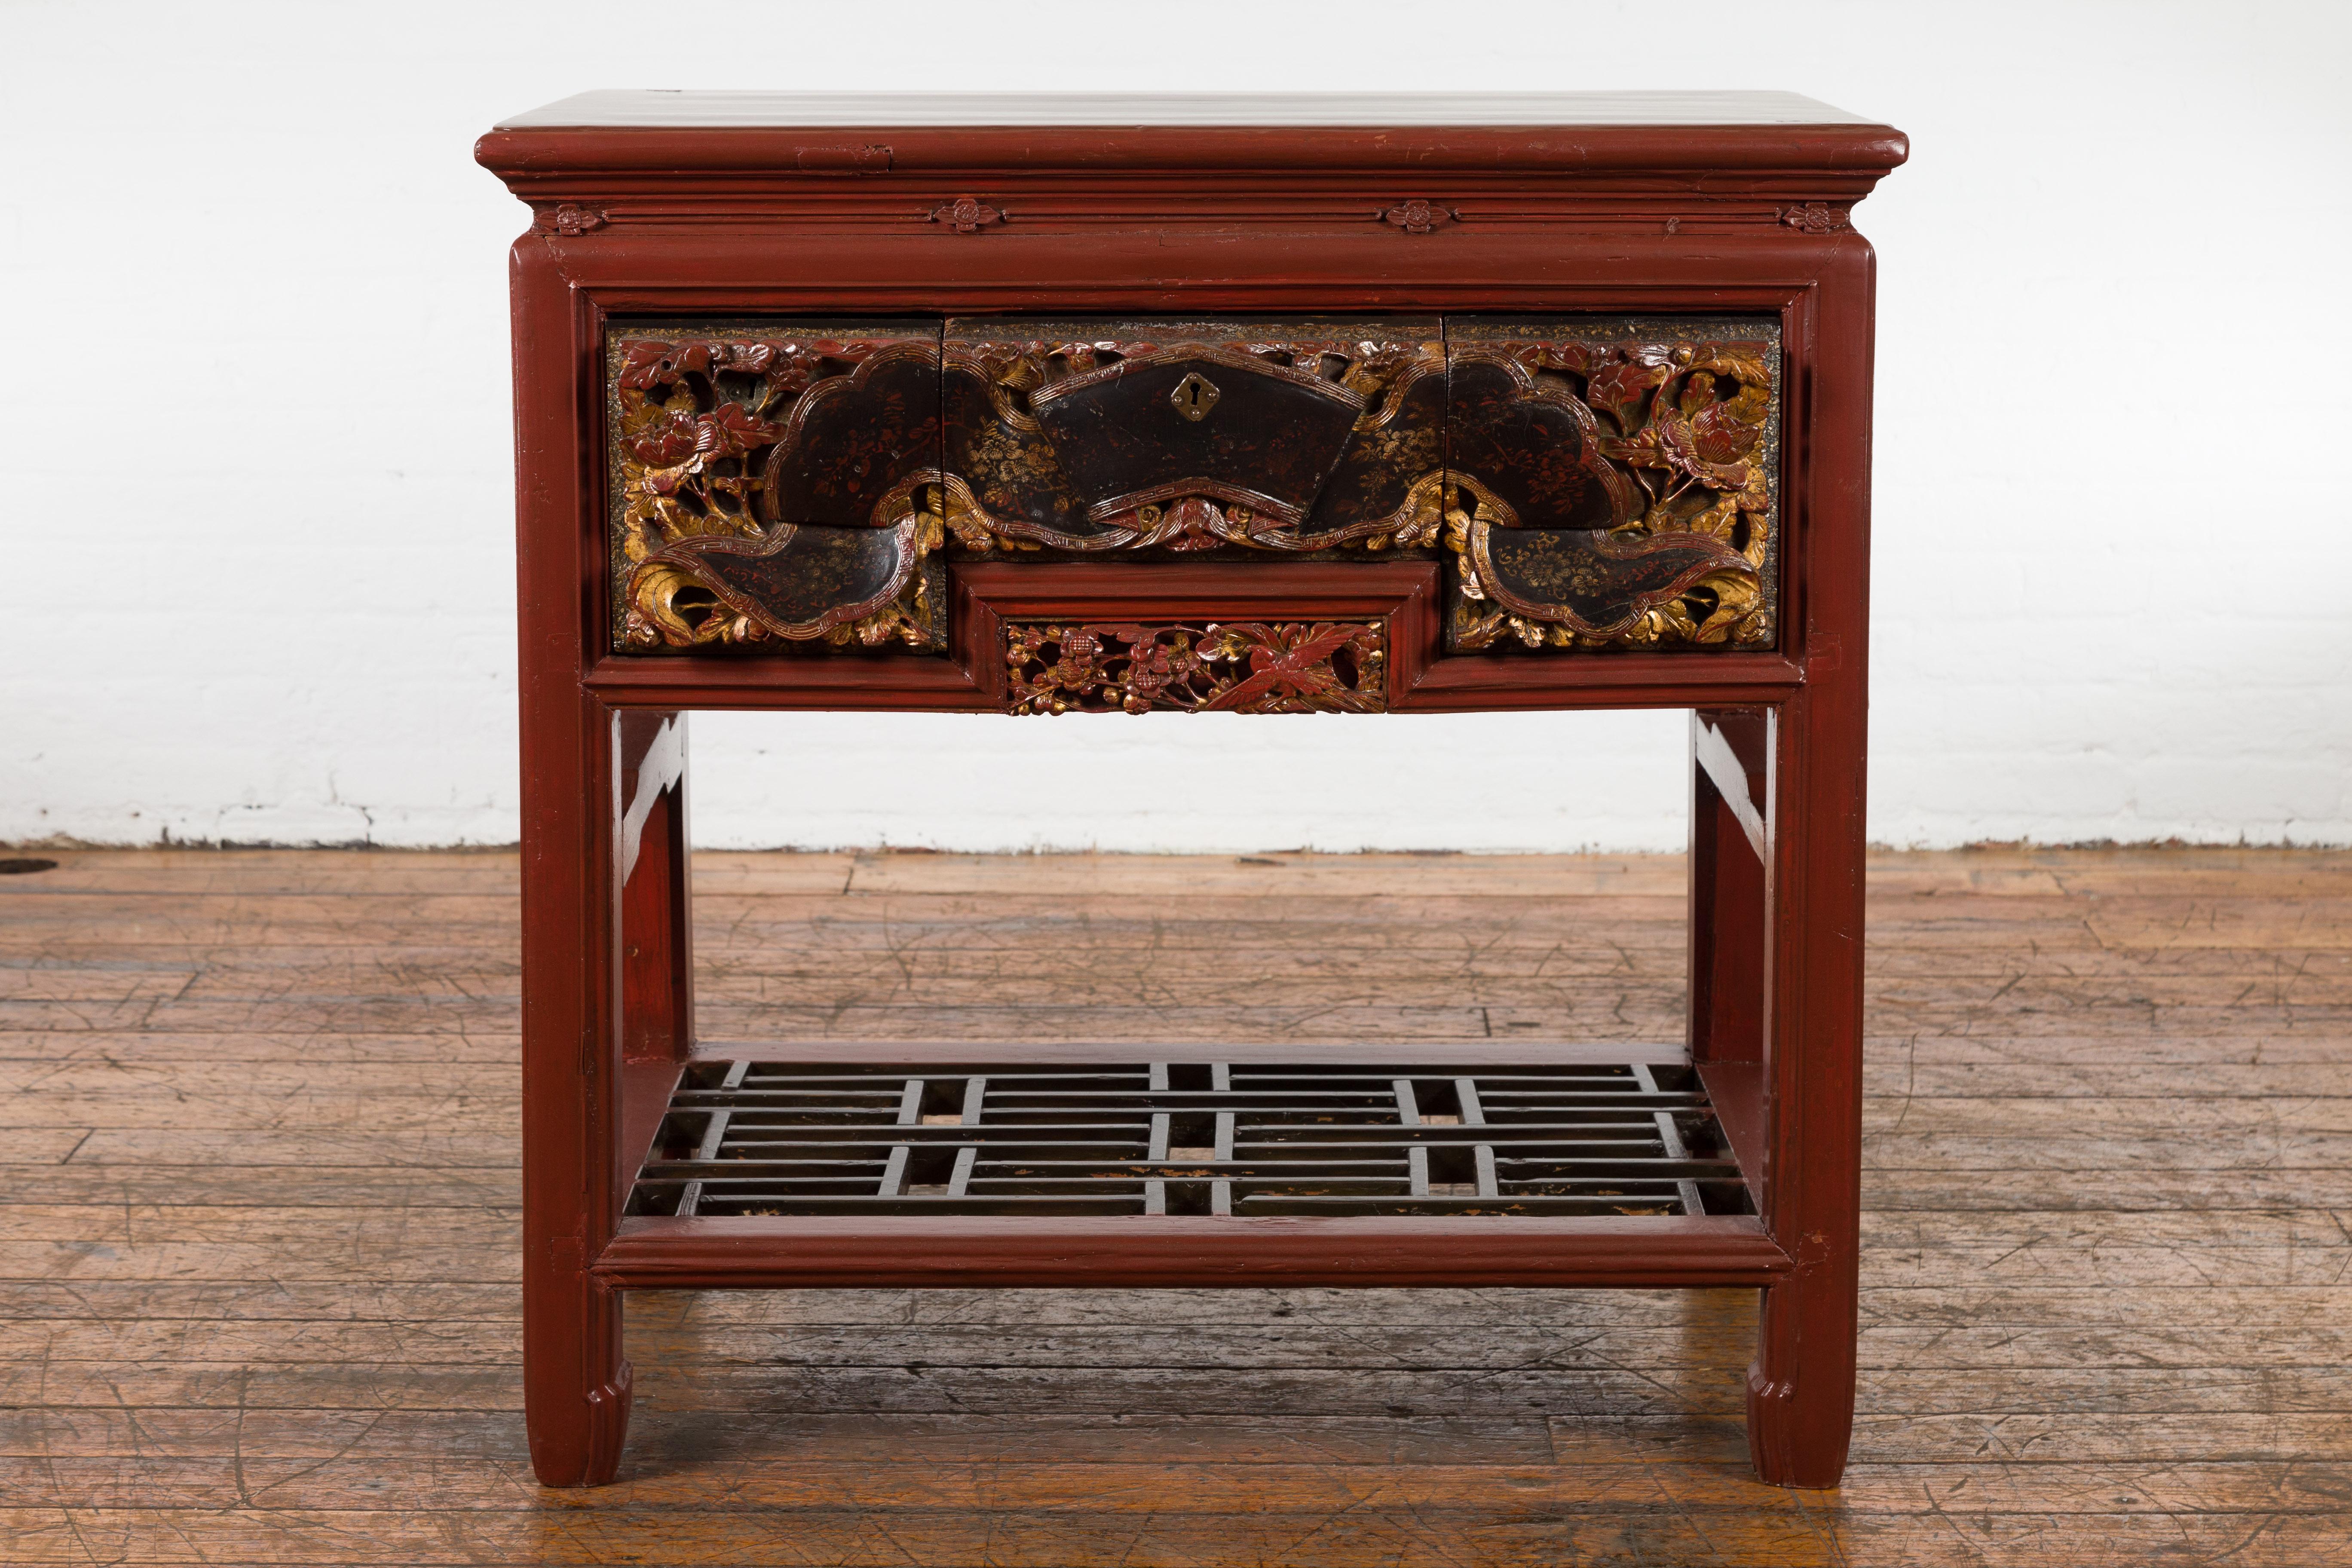 Table console chinoise en laque rouge du 20ème siècle réalisée avec des pièces sculptées du 19ème siècle, avec des tiroirs sculptés à la main très inhabituels, des rehauts noirs et dorés et une étagère géométrique. Cette table console exquise